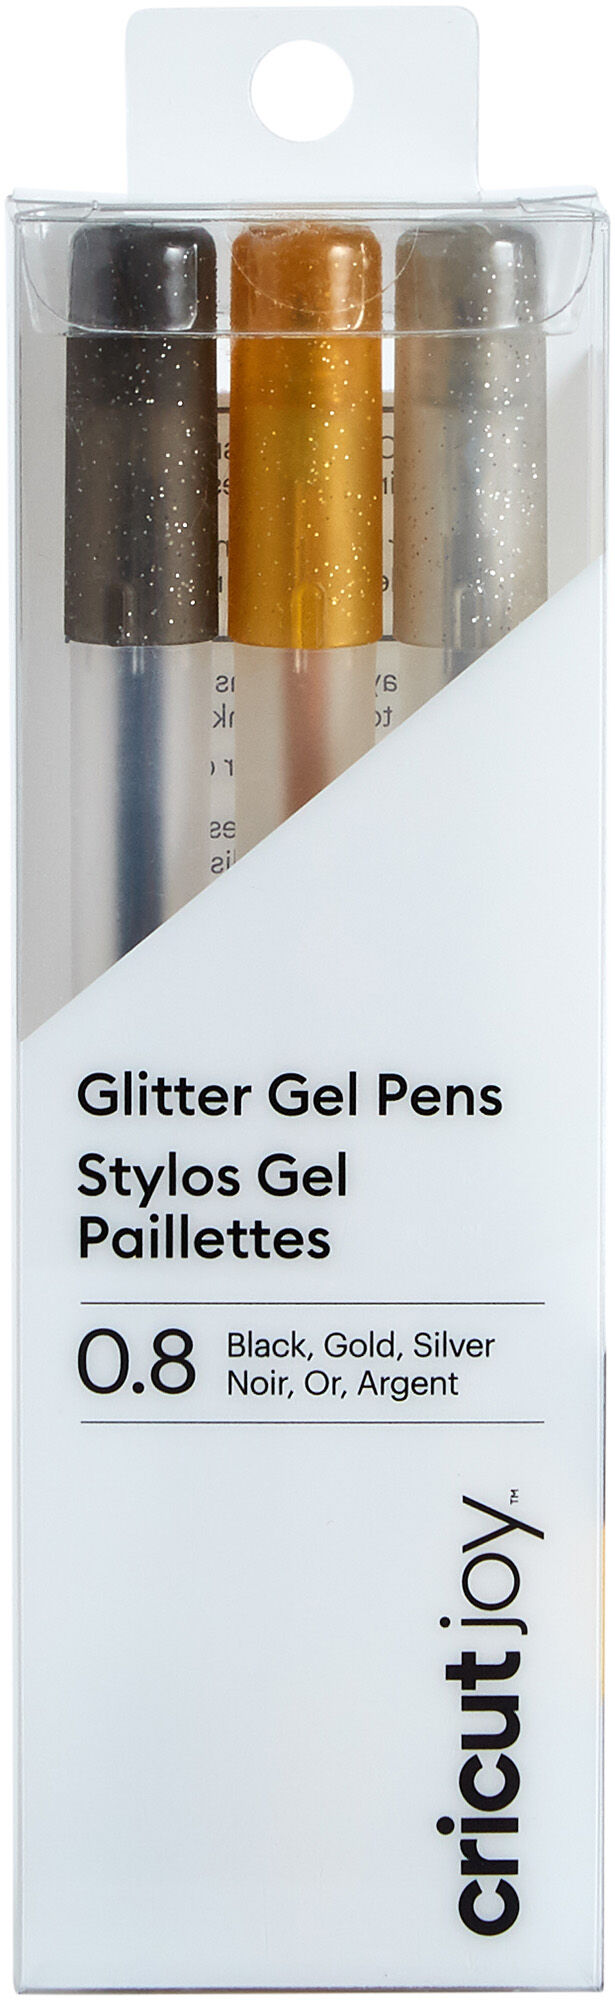 Cricut Joy Tillbehör Medium Point Glitter Gel Pens 3-pack Black Gold Silver